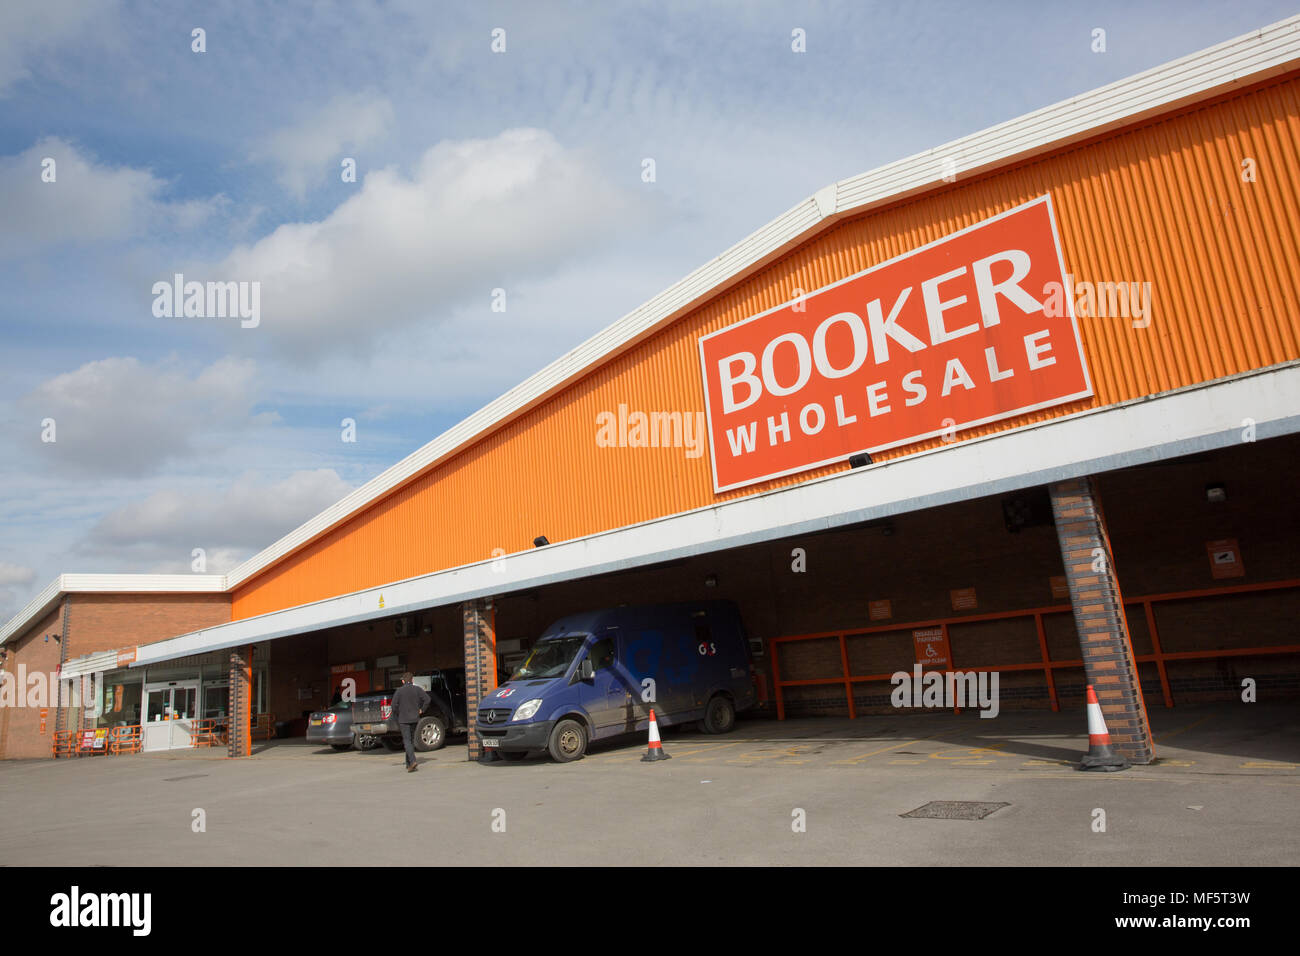 Booker Wholesale signage Stock Photo